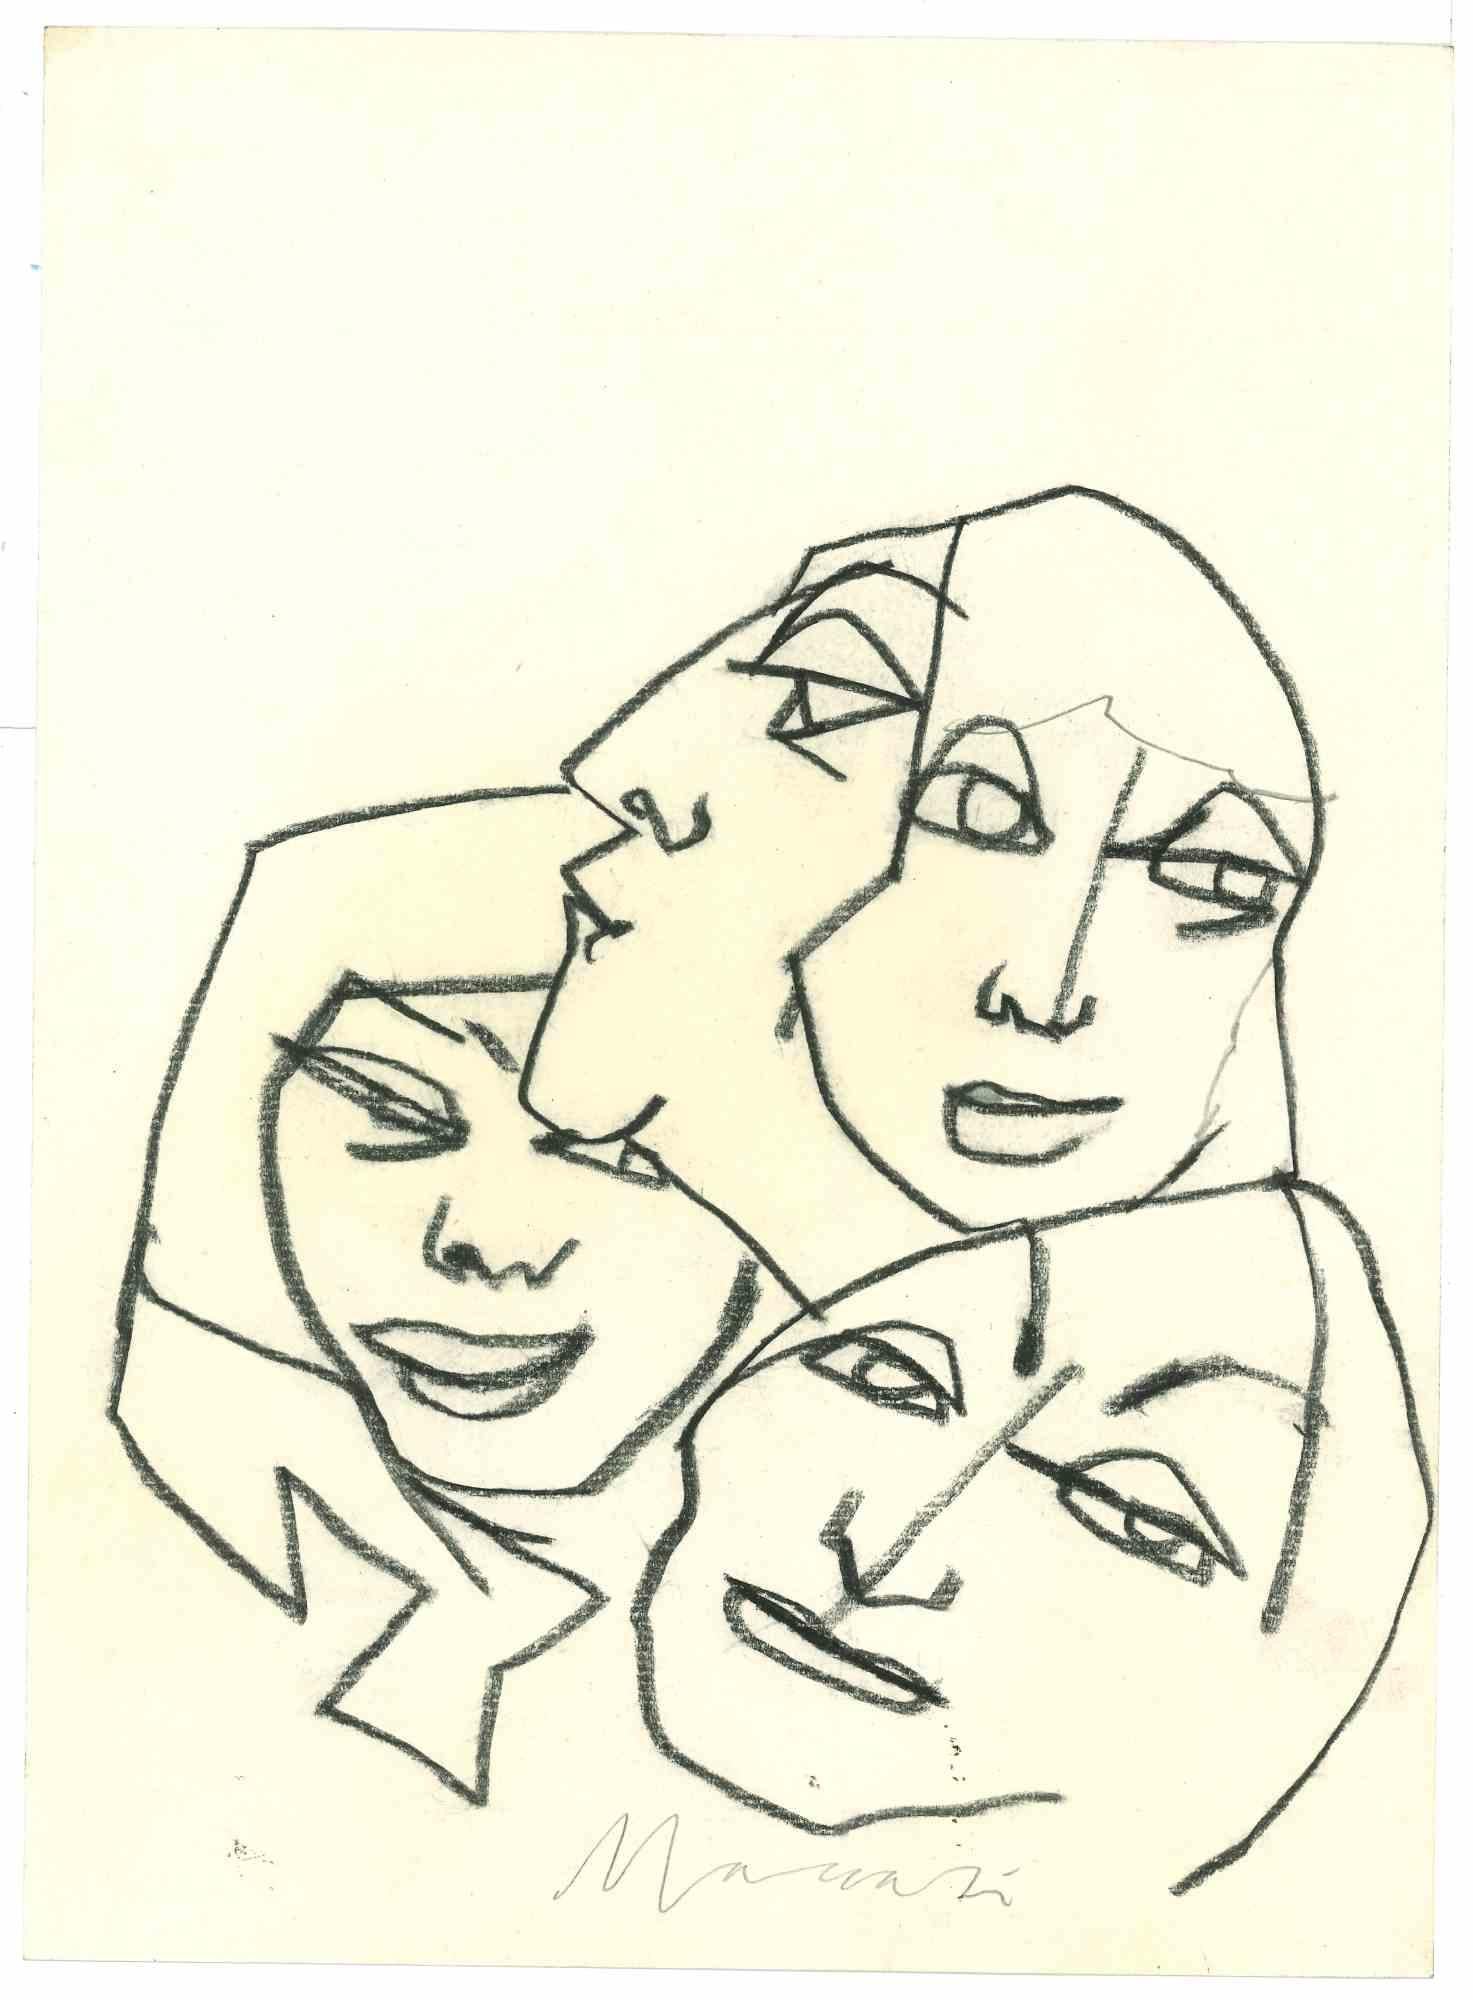 Faces ist eine Kohlezeichnung realisiert von Mino Maccari  (1924-1989) in den 1980er Jahren.

Handsigniert am unteren Rand.

Gute Bedingungen.

Mino Maccari (Siena, 1924-Rom, 16. Juni 1989) war ein italienischer Schriftsteller, Maler, Graveur und